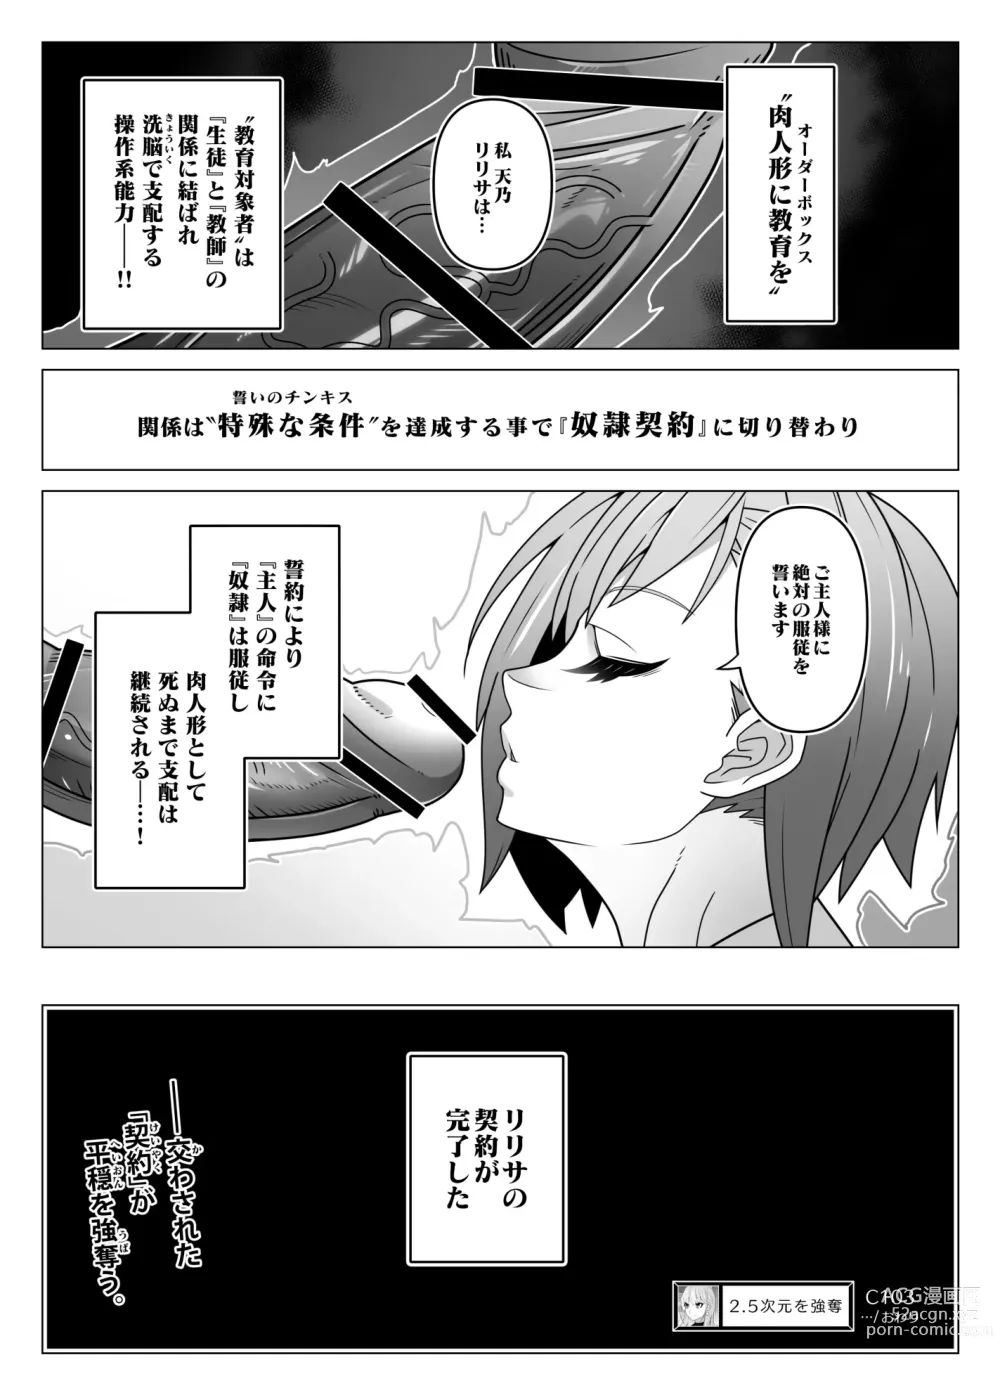 Page 23 of doujinshi 2.5 Jigen o Goudatsu